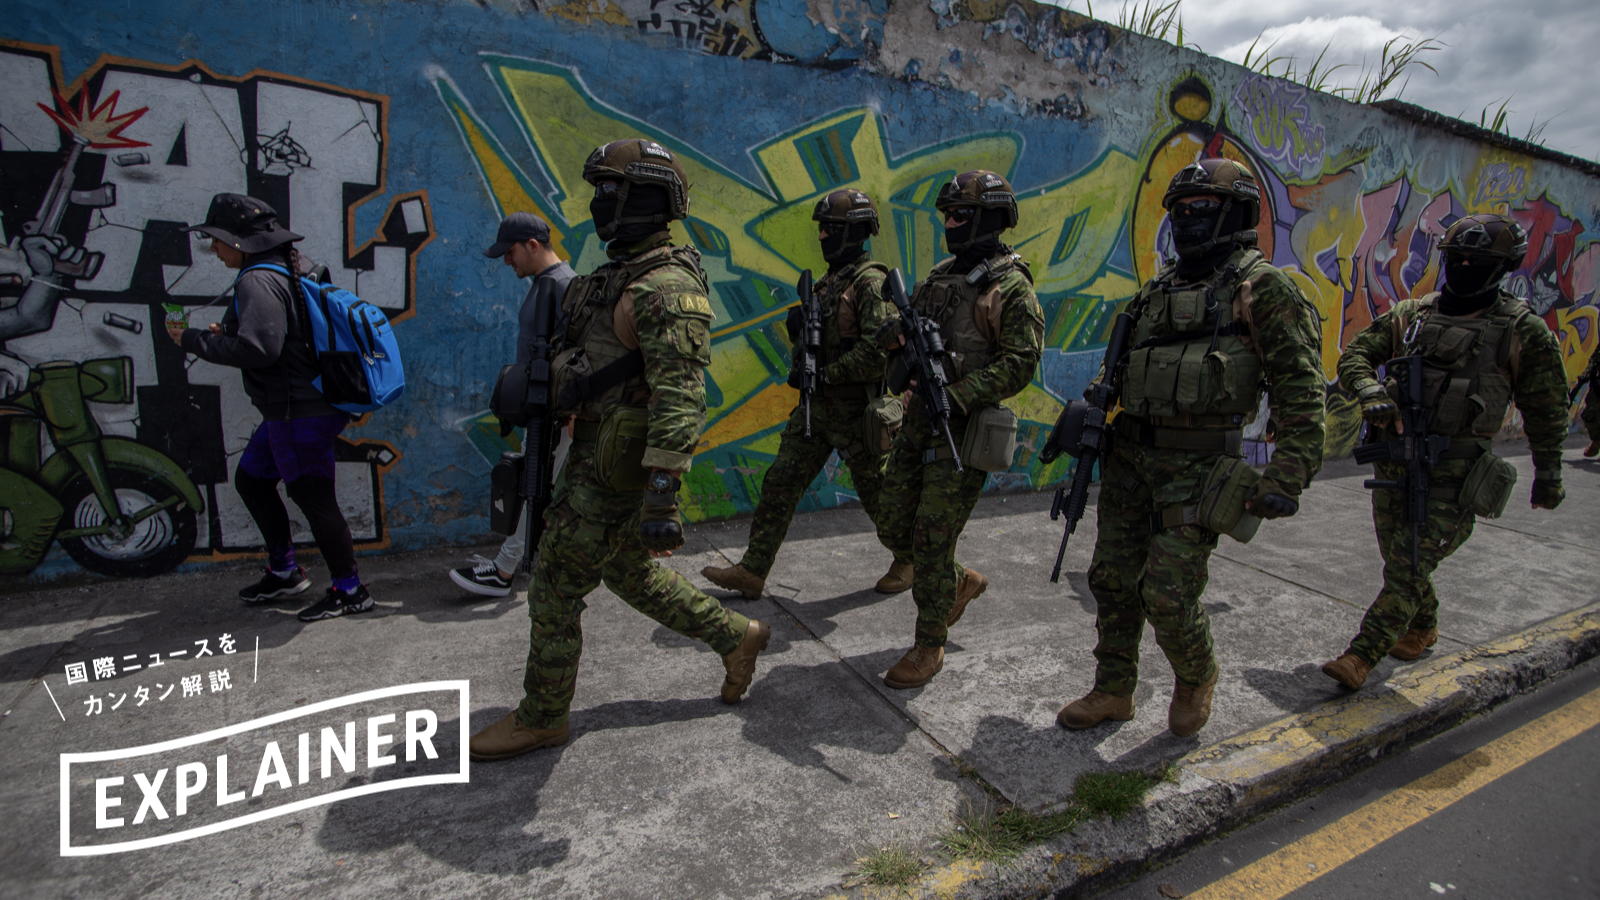 【解説】政府とギャングが内戦状態─エクアドルの治安悪化の背景 | コカインの世界的な輸出拠点になった結果